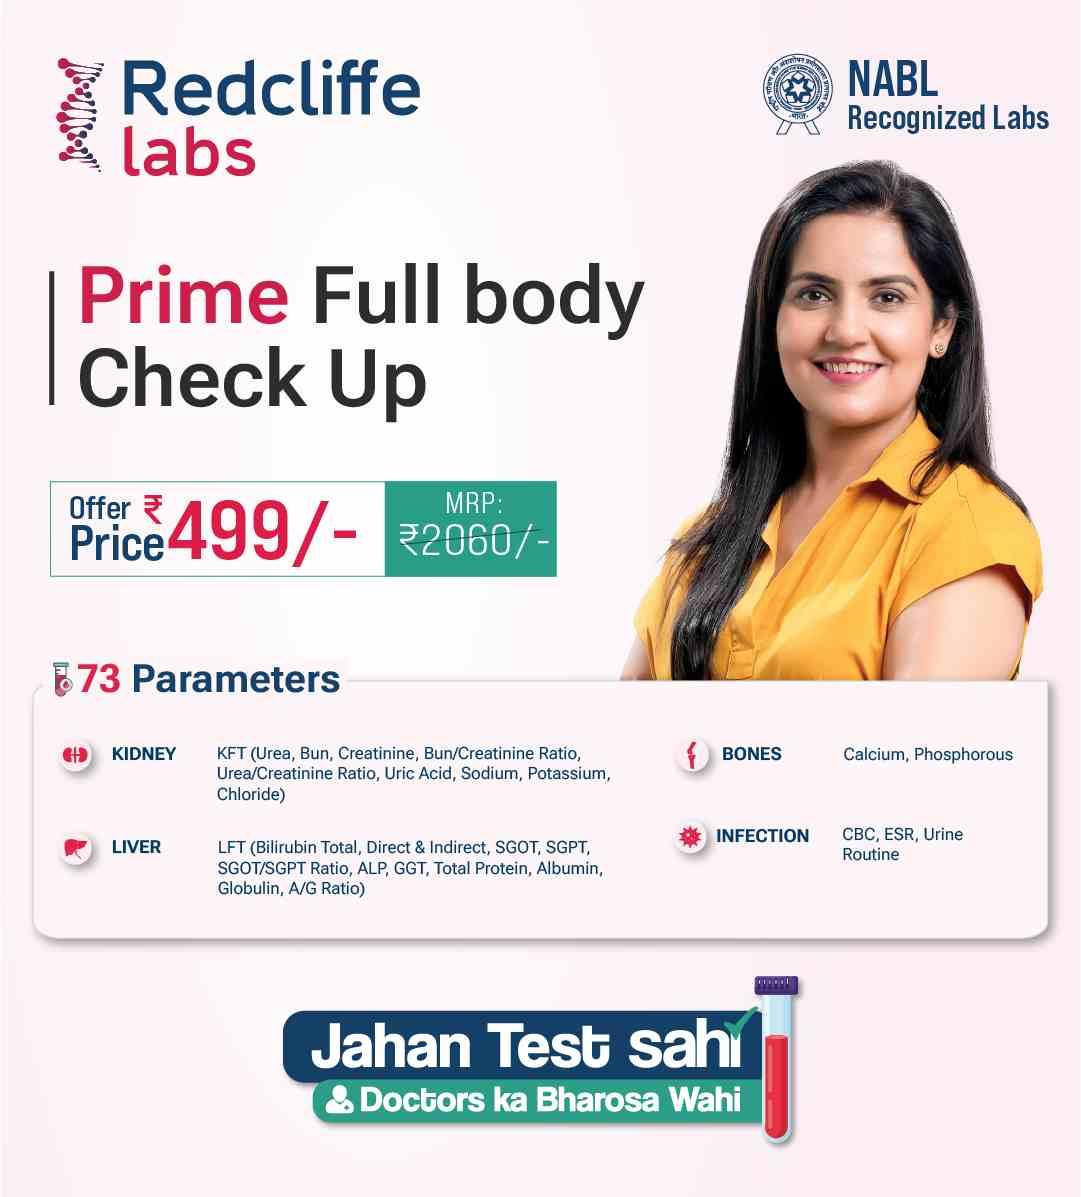 Prime Full body Check Up in Delhi